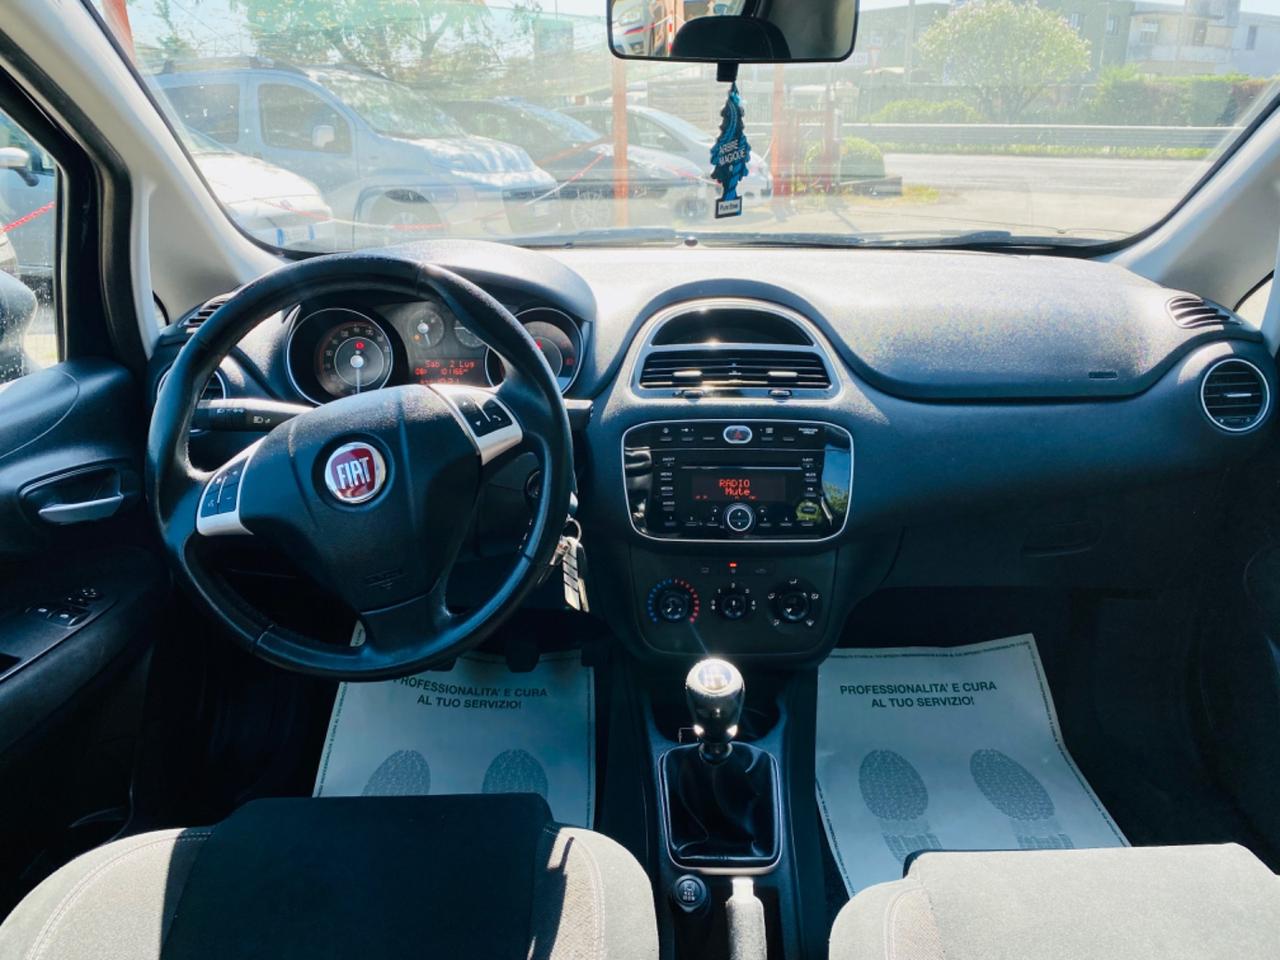 Fiat Punto 1.2 anno 2015 km 100,000 ok neopatentati ! ! !